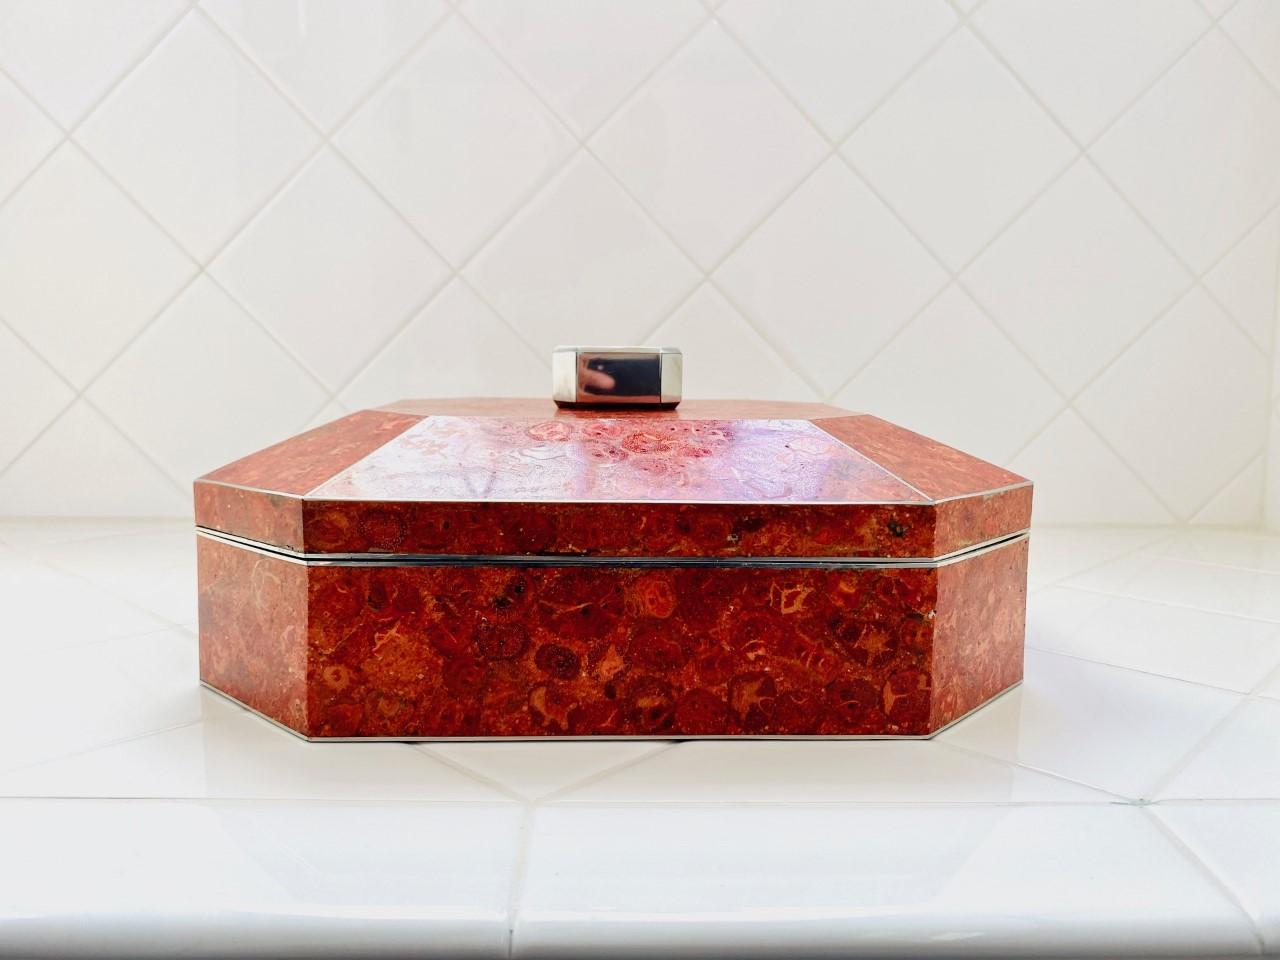 Luxueuse boîte en corail rouge de Maitland-Smith. Cette magnifique boîte fabriquée à partir d'authentiques carreaux de corail rouge est luxueuse et glamour. Chacune des pièces qui composent ce coffret a ses marques naturelles qui complètent